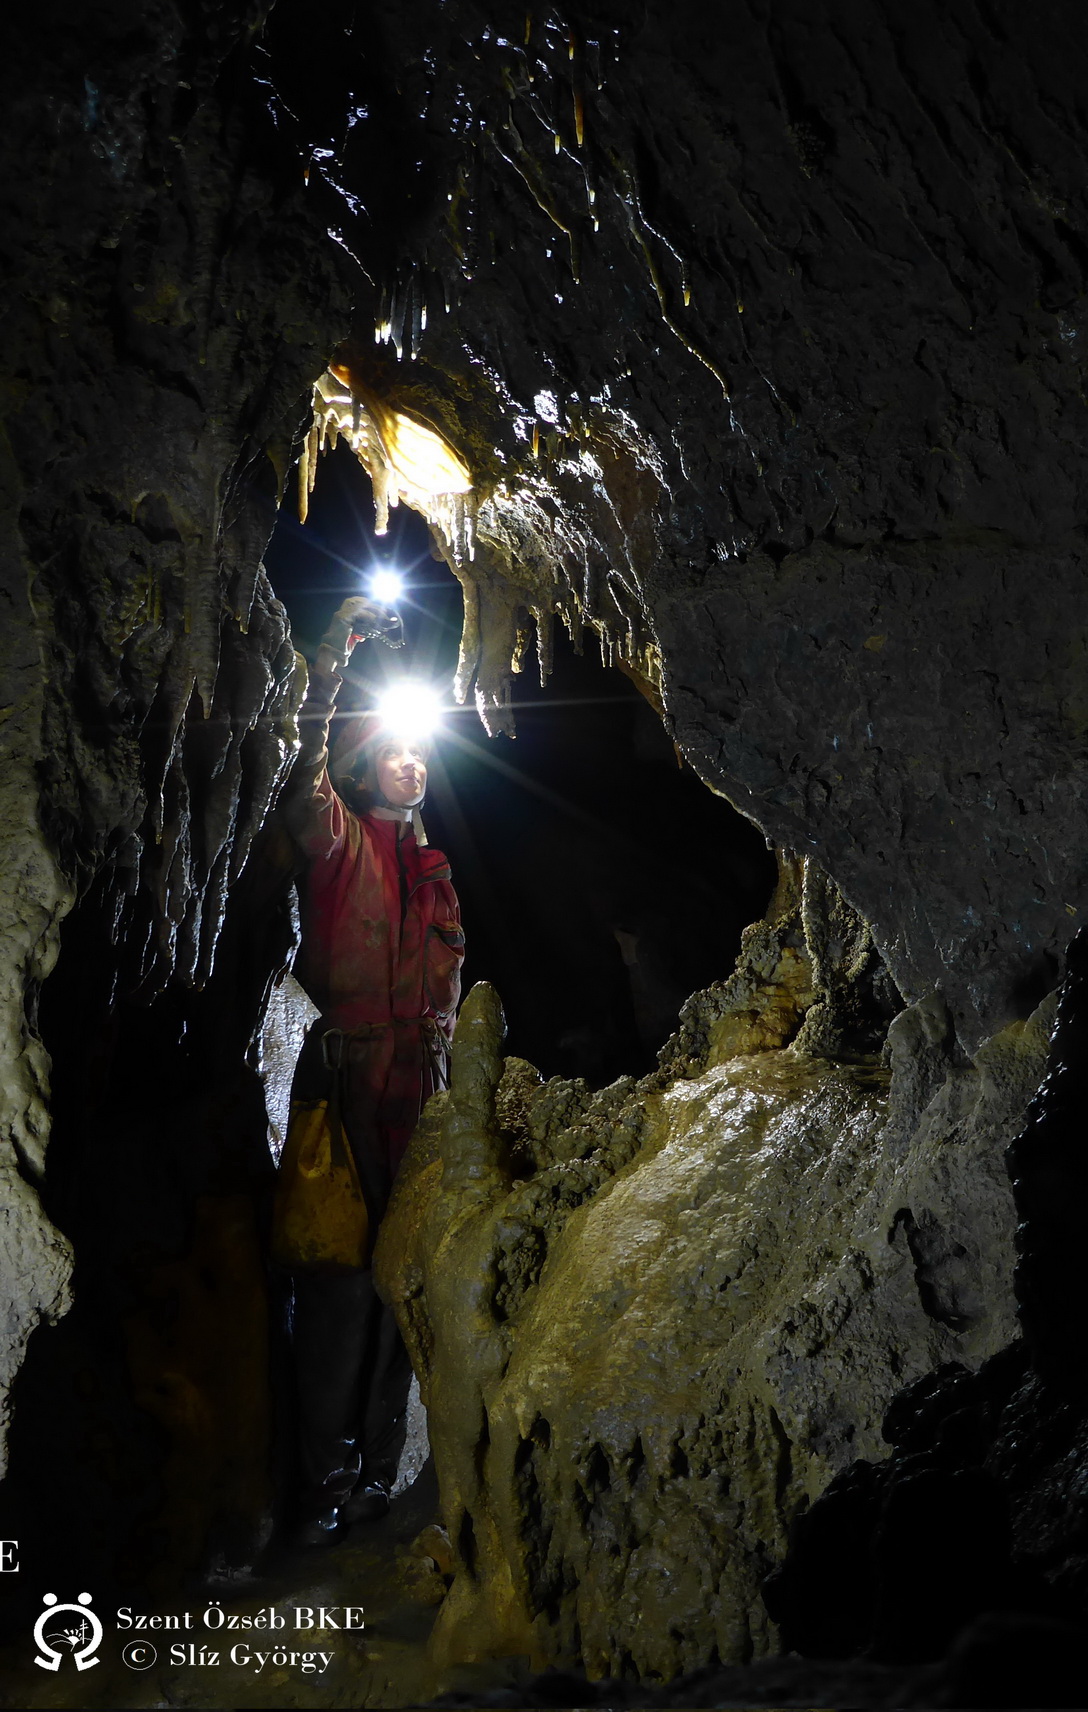 István-lápai-barlang, fosszilis járat a drótkötélhíd túloldala közelében